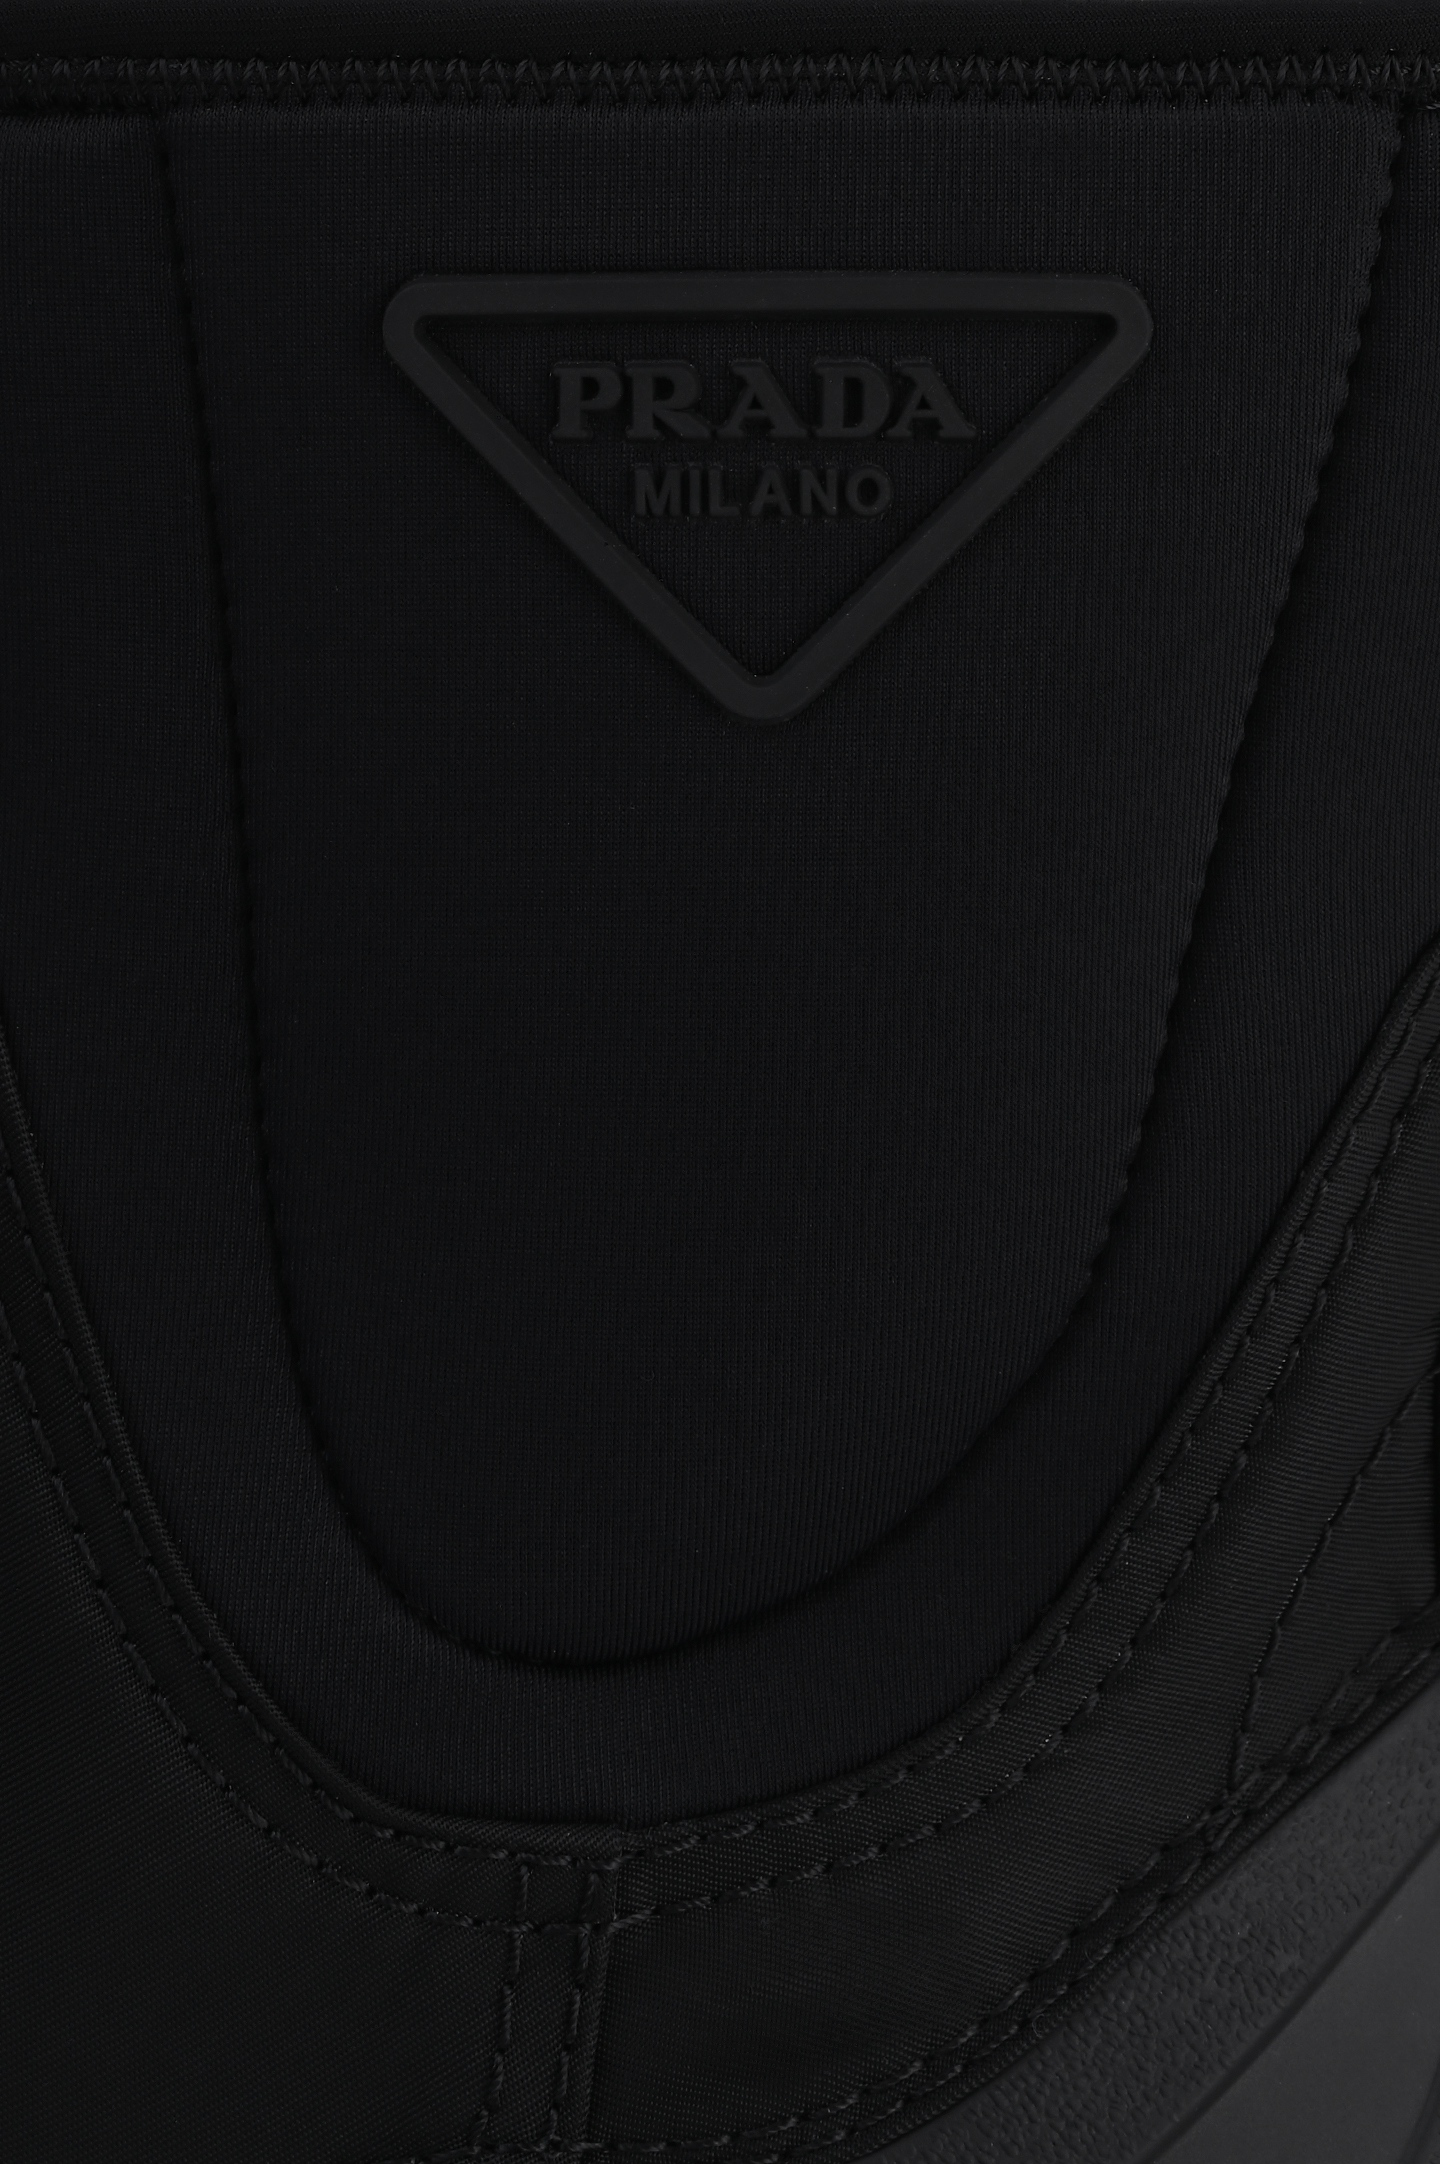 Ботинки PRADA 2UE0293LFVF0002, цвет: Черный, Мужской